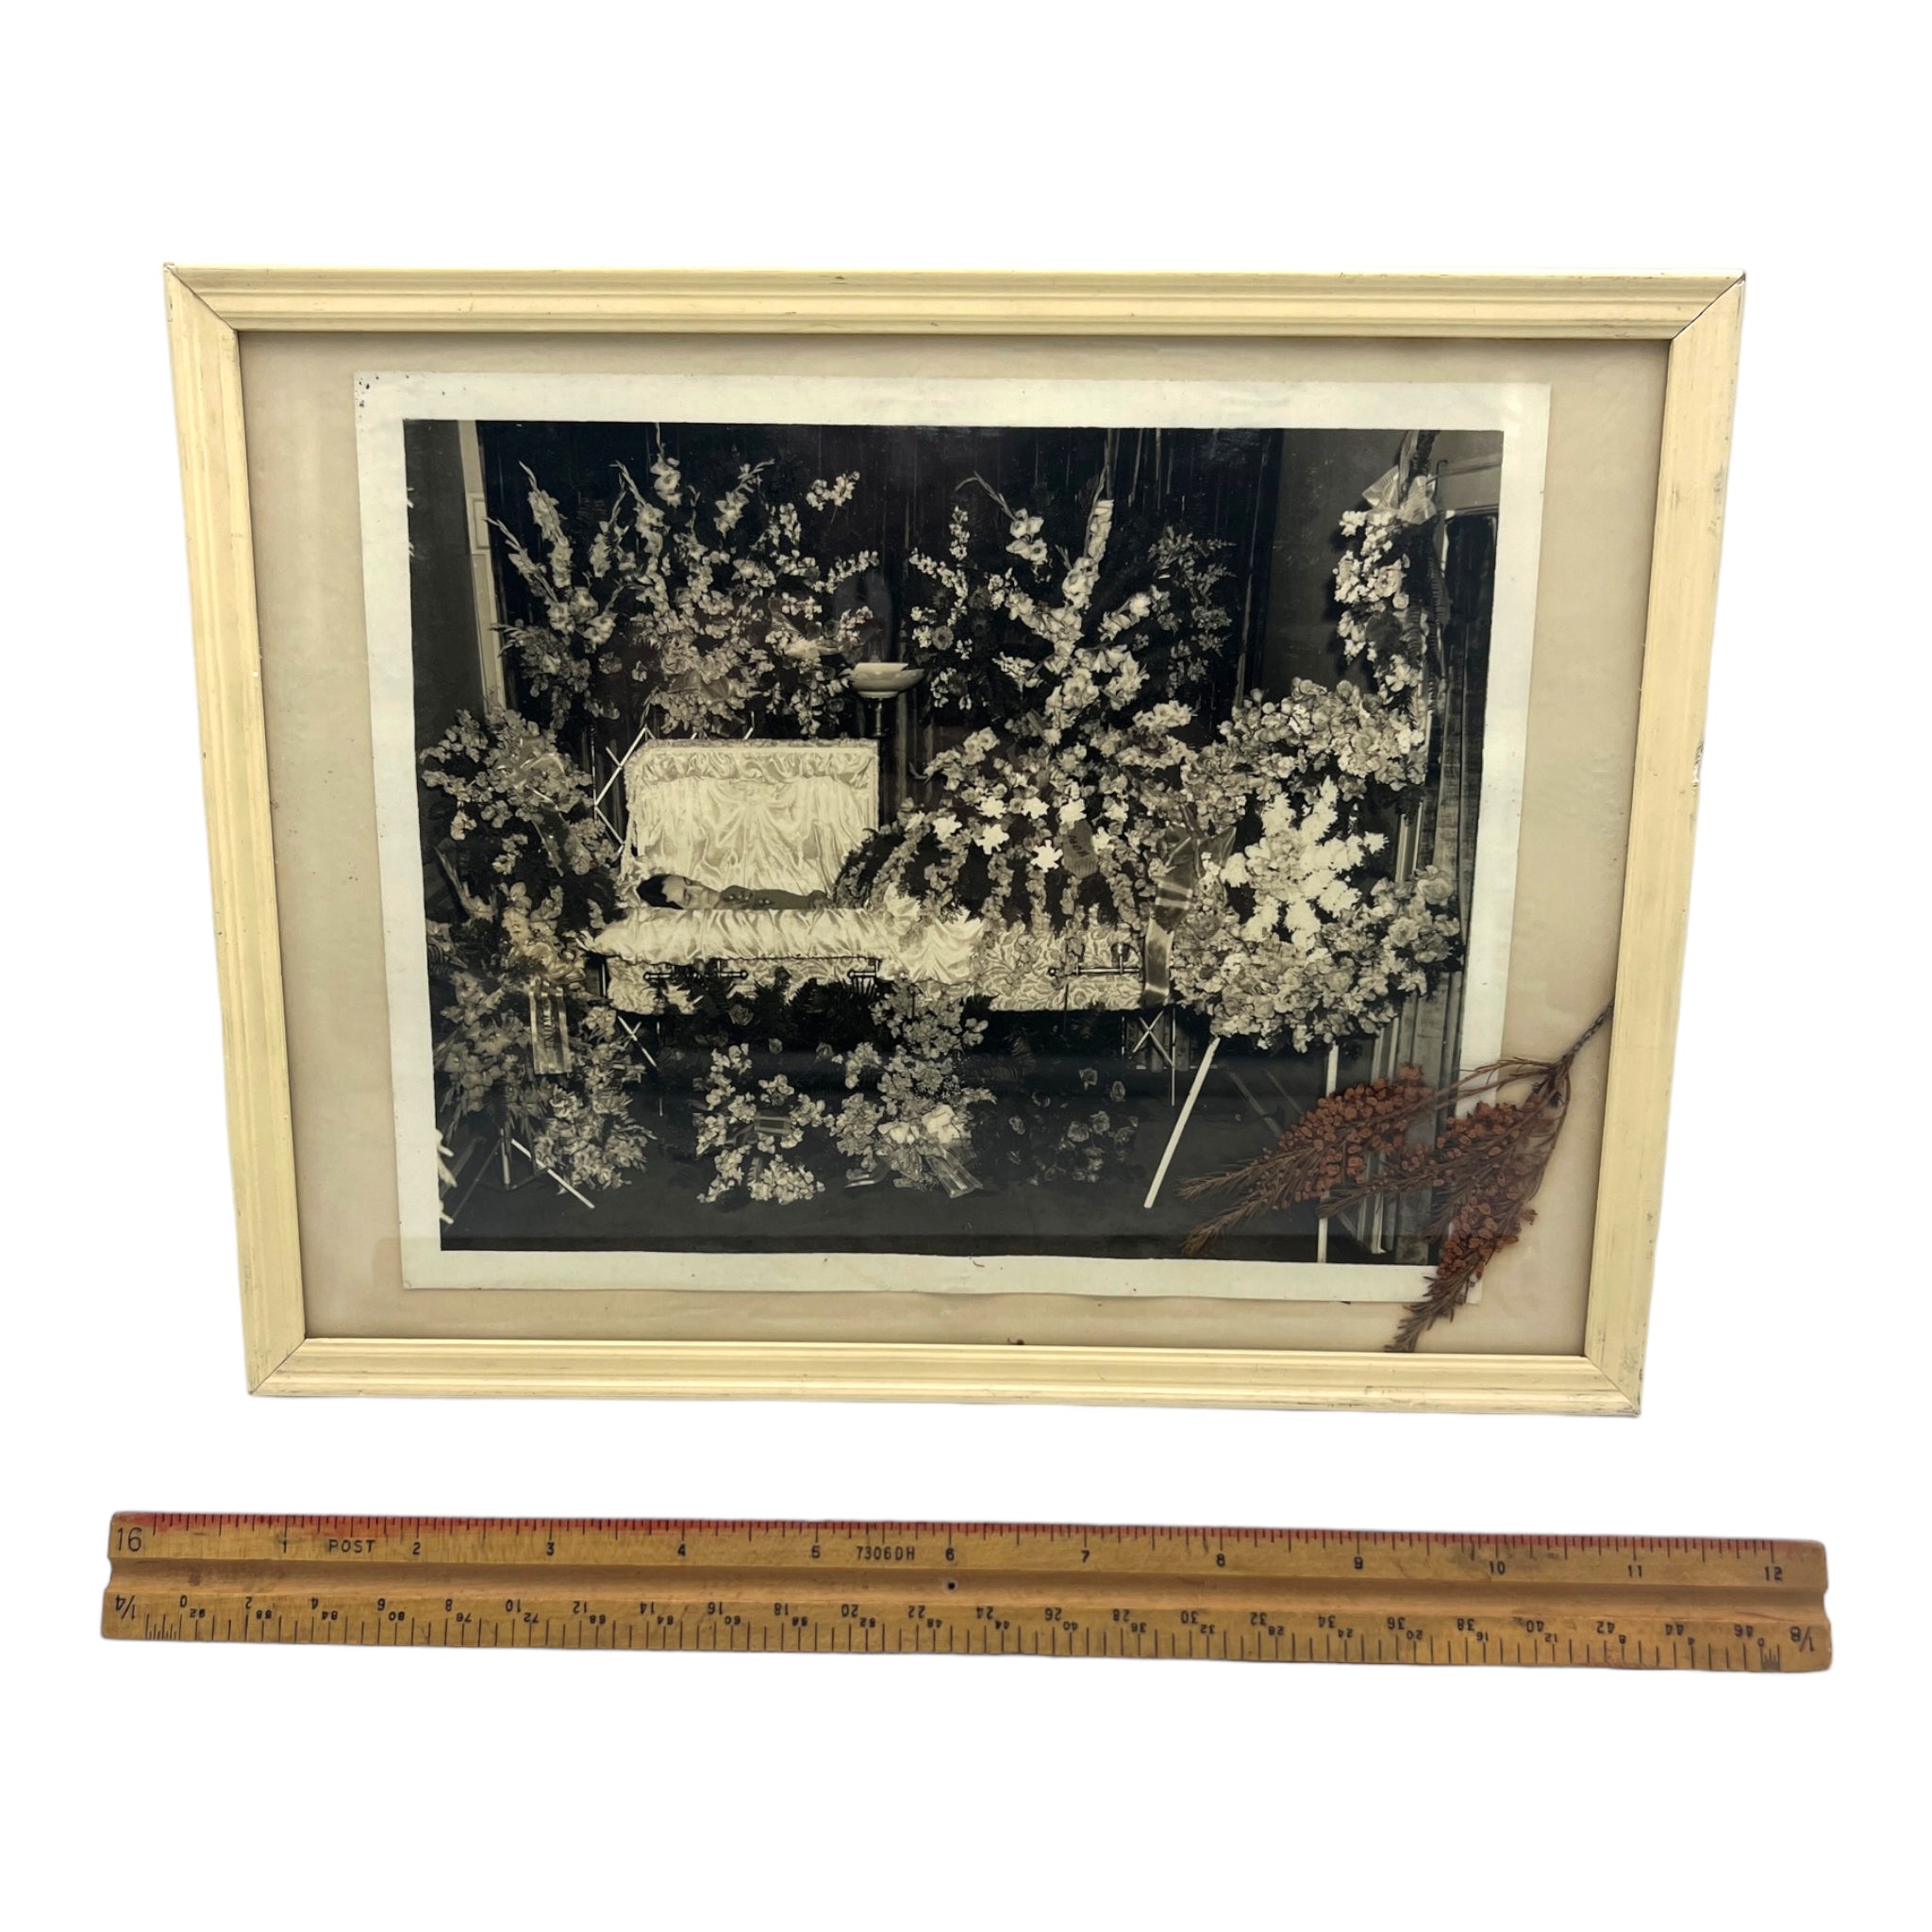 Vintage Framed Post Mortem Framed Photo With Funeral Flowers